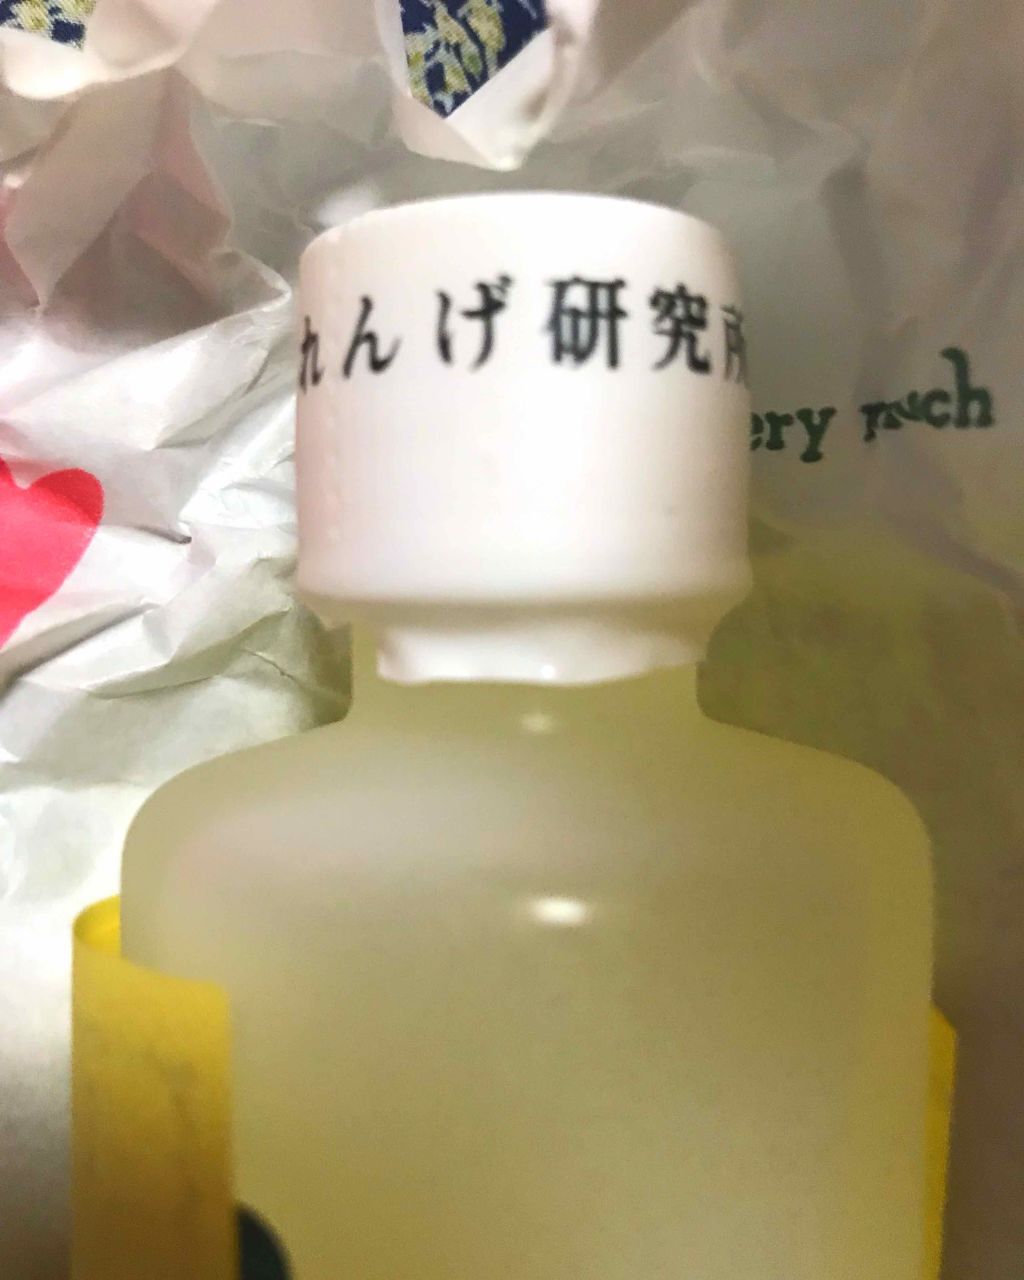 れんげ化粧水｜れんげ研究所の使い方を徹底解説「生のレモンを絞って作られるれんげ化粧水はず..」 by yuu(敏感肌) | LIPS